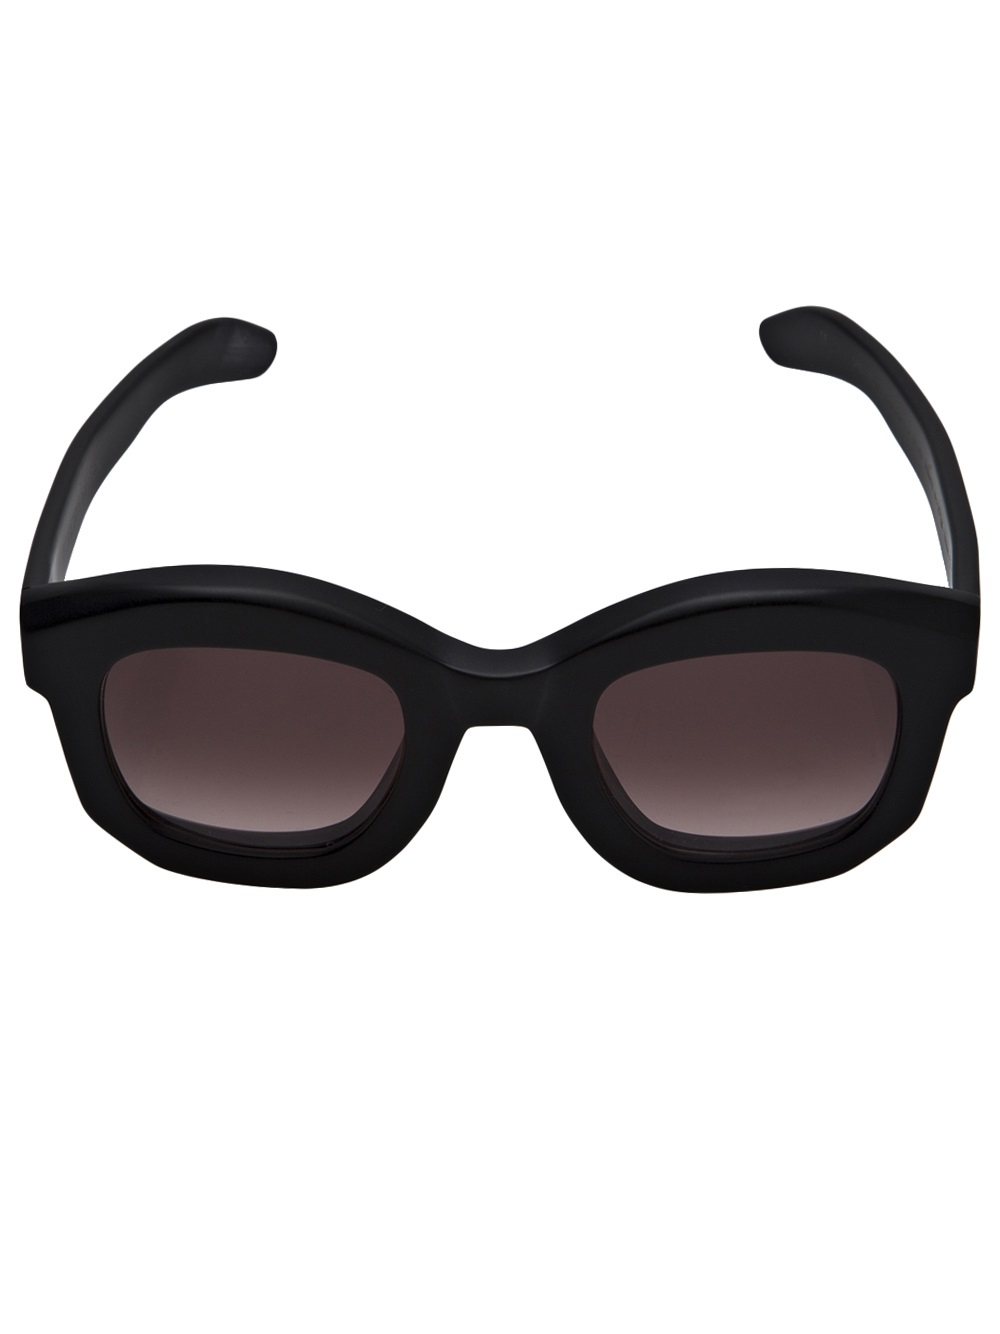 Lyst - Kuboraum Thick Frame Sunglasses in Black for Men